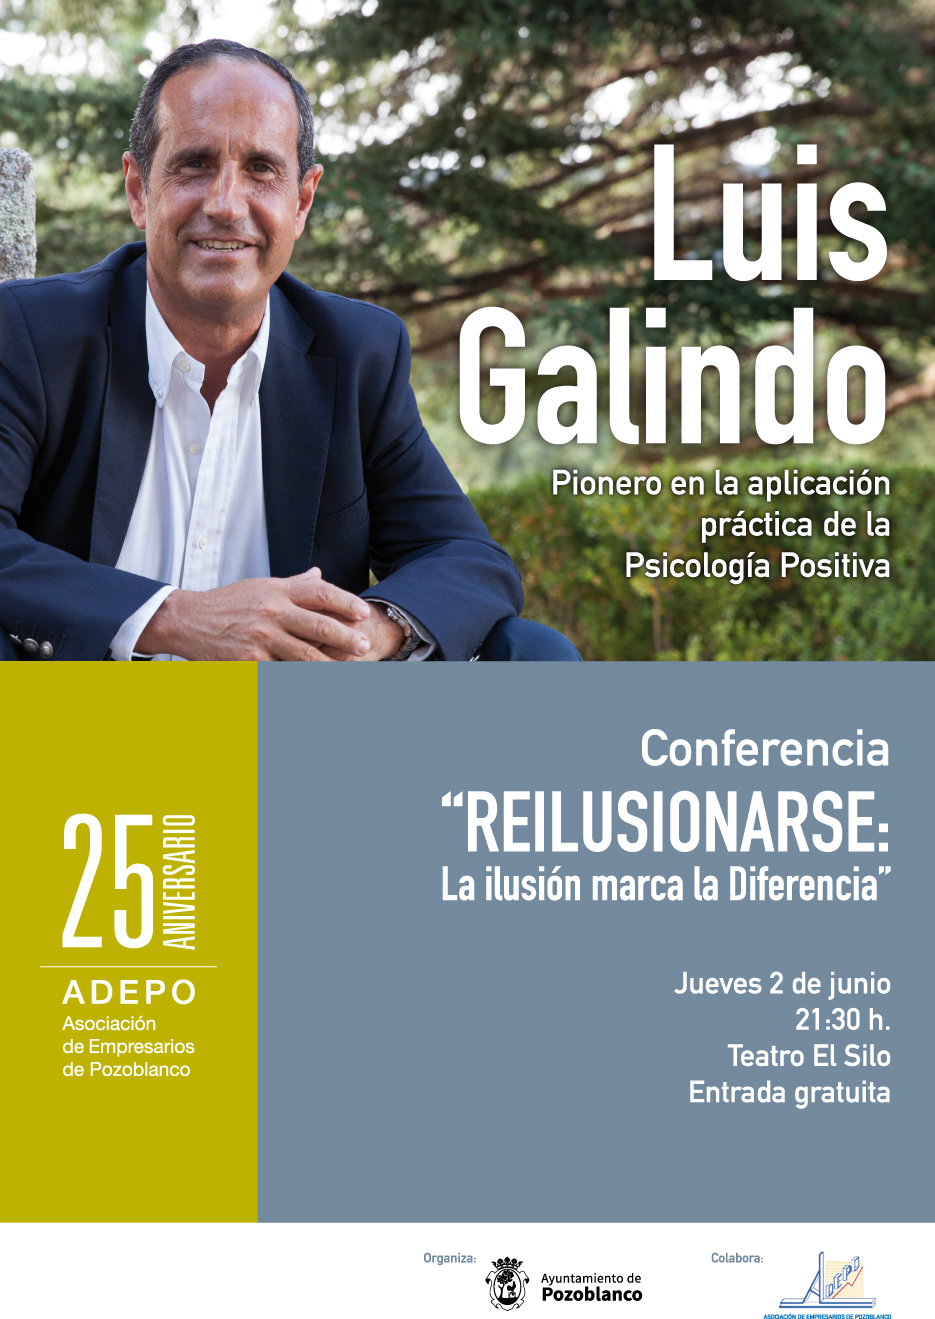 El escritor y coach Luis Galindo imparte una conferencia en El Silo con motivo del 25 aniversario de Adepo 1